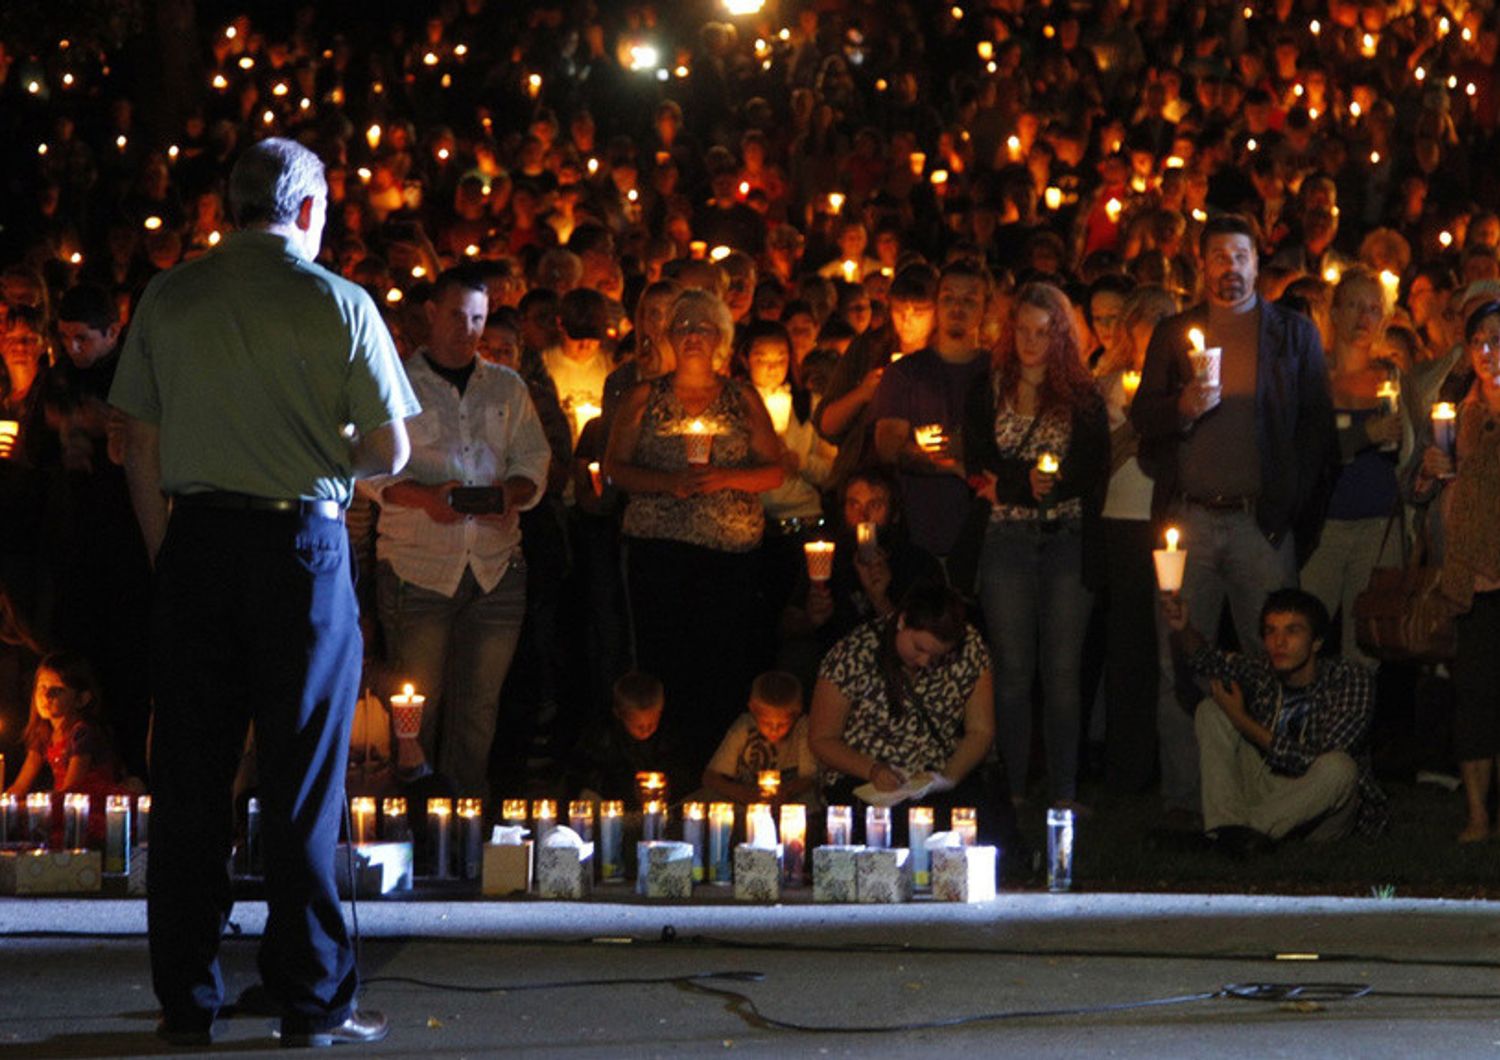 Strage campus Oregon, 10 morti Testimone, "un killer di cristiani"